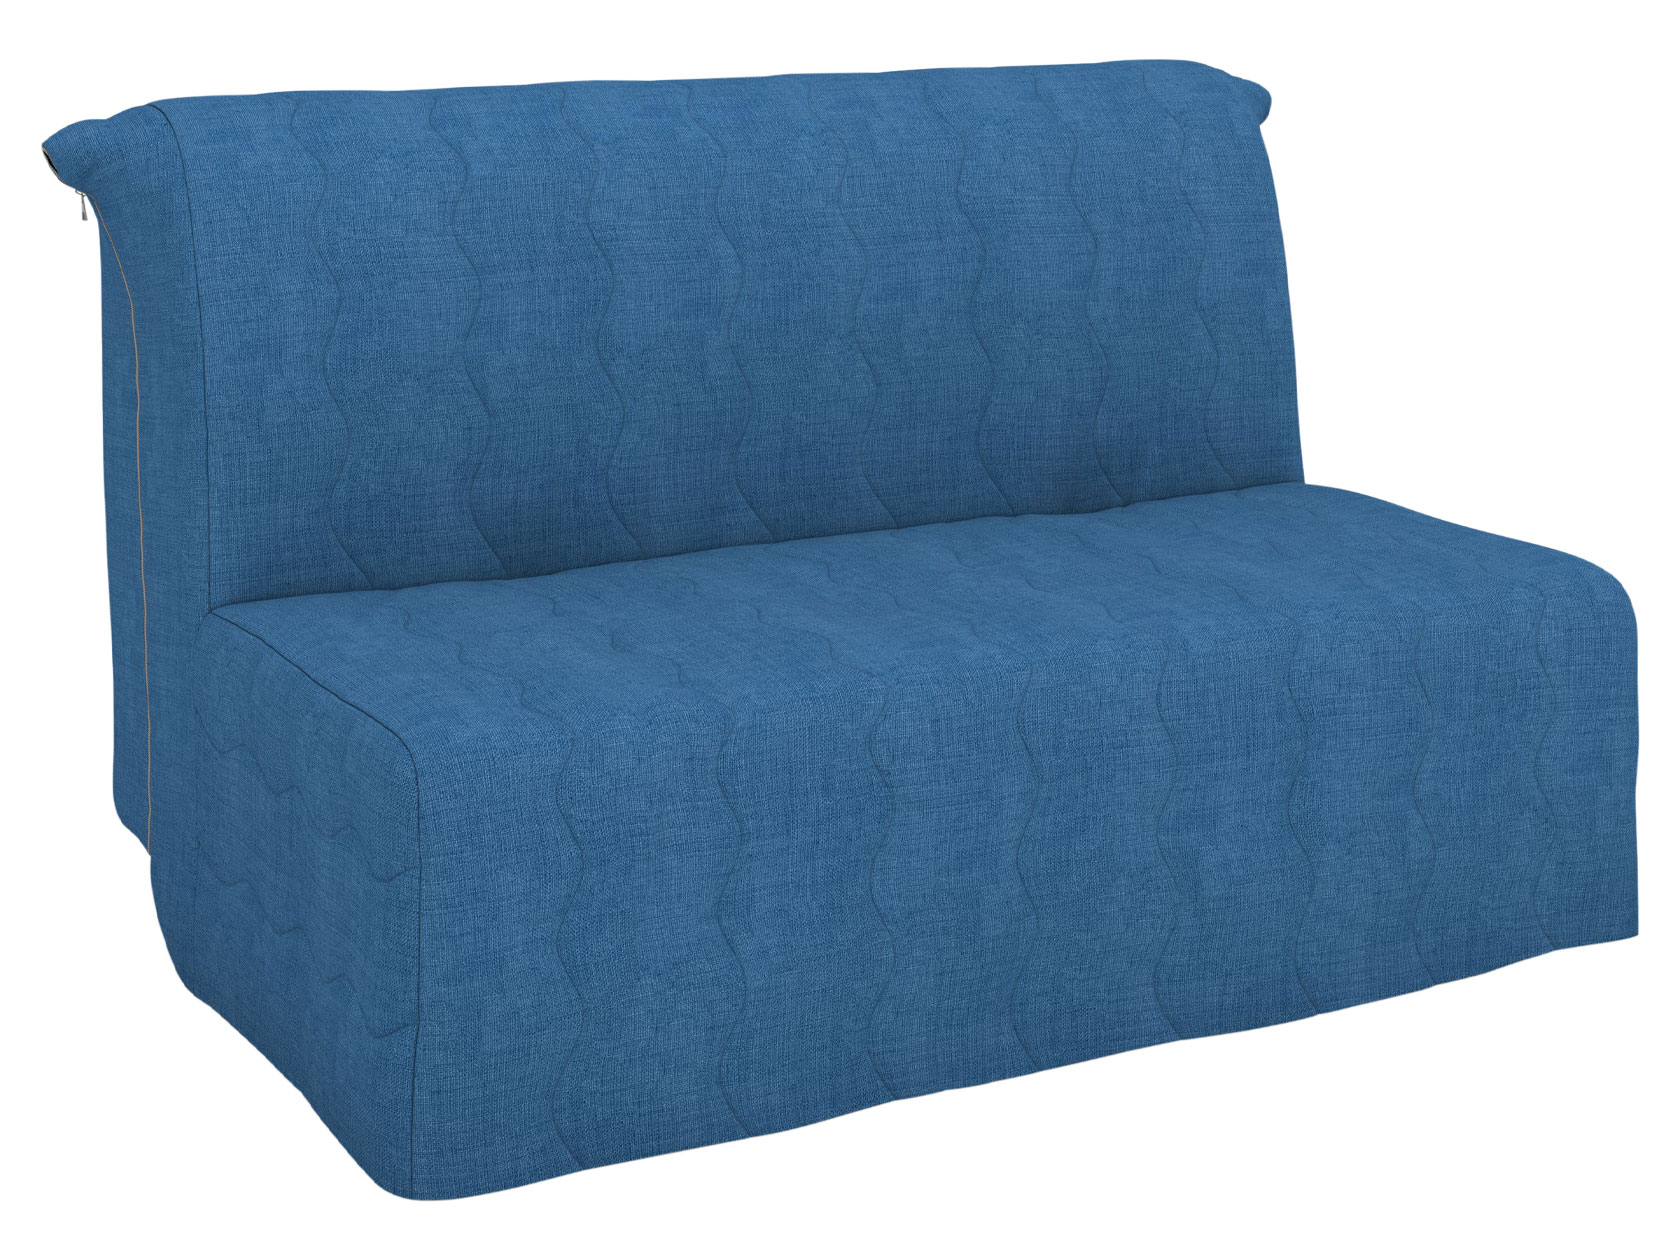 Прямой диван Ривали Бонд Синий, рогожка, 145 см